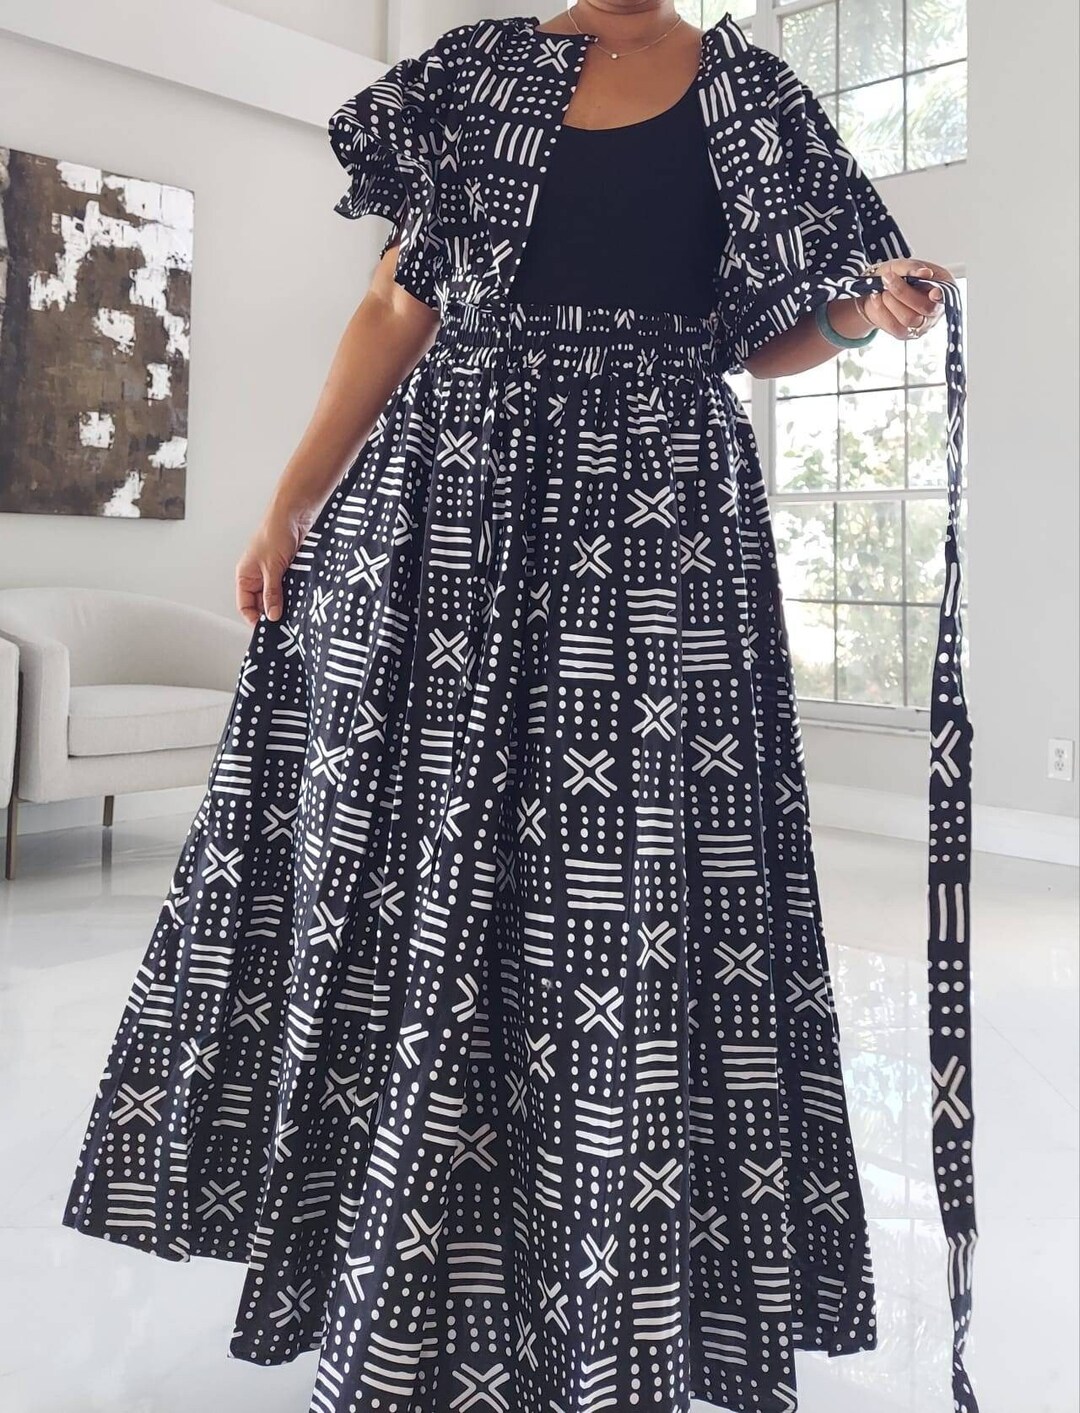 Ankara Style Maxi Skirt With Sash / Crop Top - Etsy